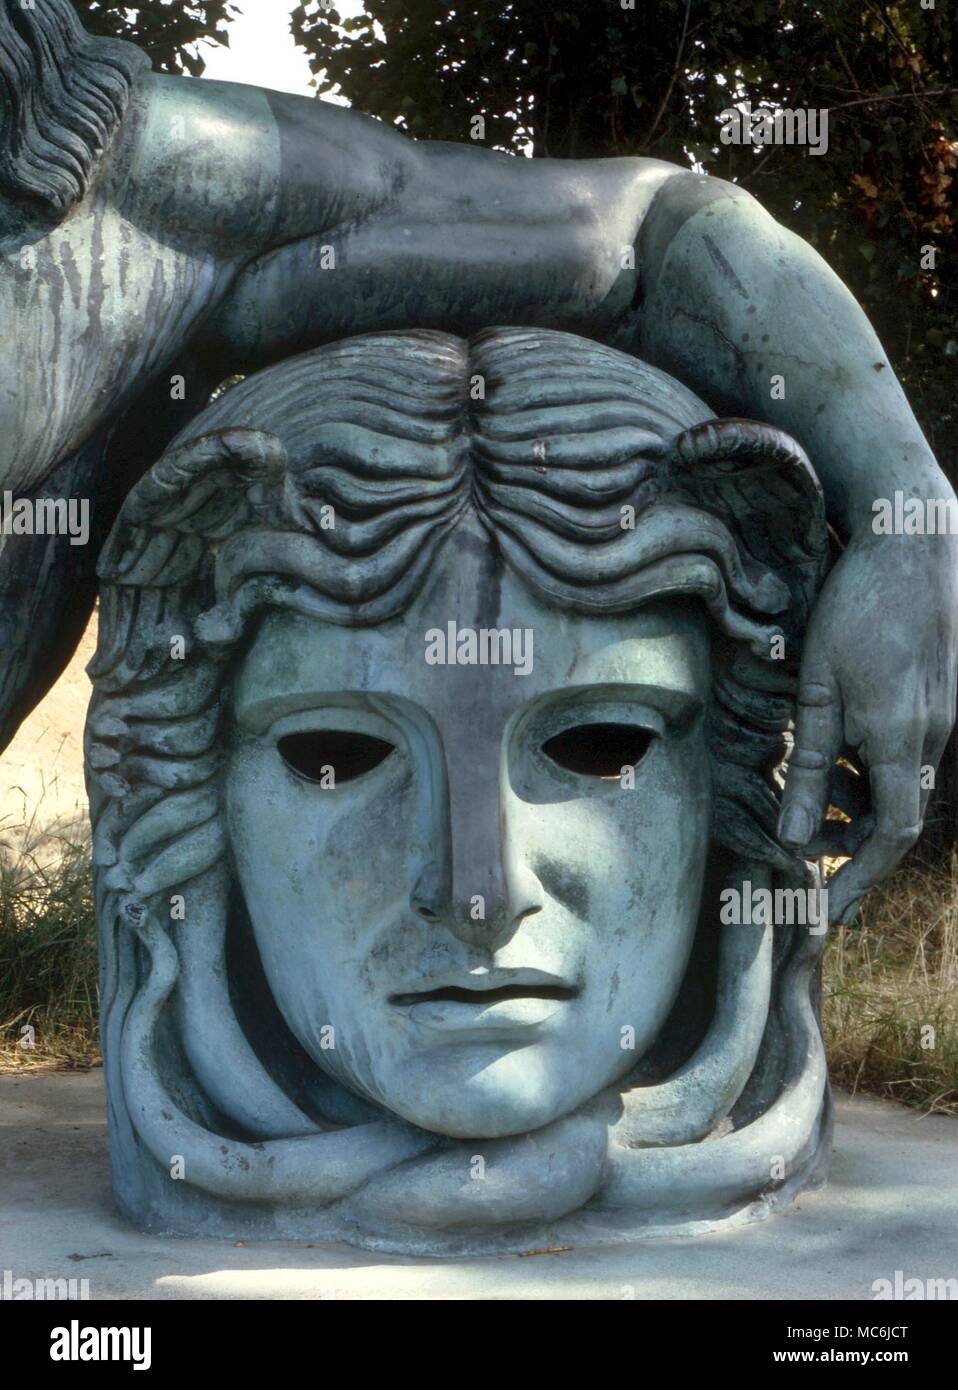 Dämonen - MEDUSA. Der enthauptete Kopf der Gorgo Medusa, auf der Leonardo da Vinci dargestellt ist liegend seinen linken Arm. Riesige Statue am Ufer der Loire, in Amboise, Frankreich Stockfoto